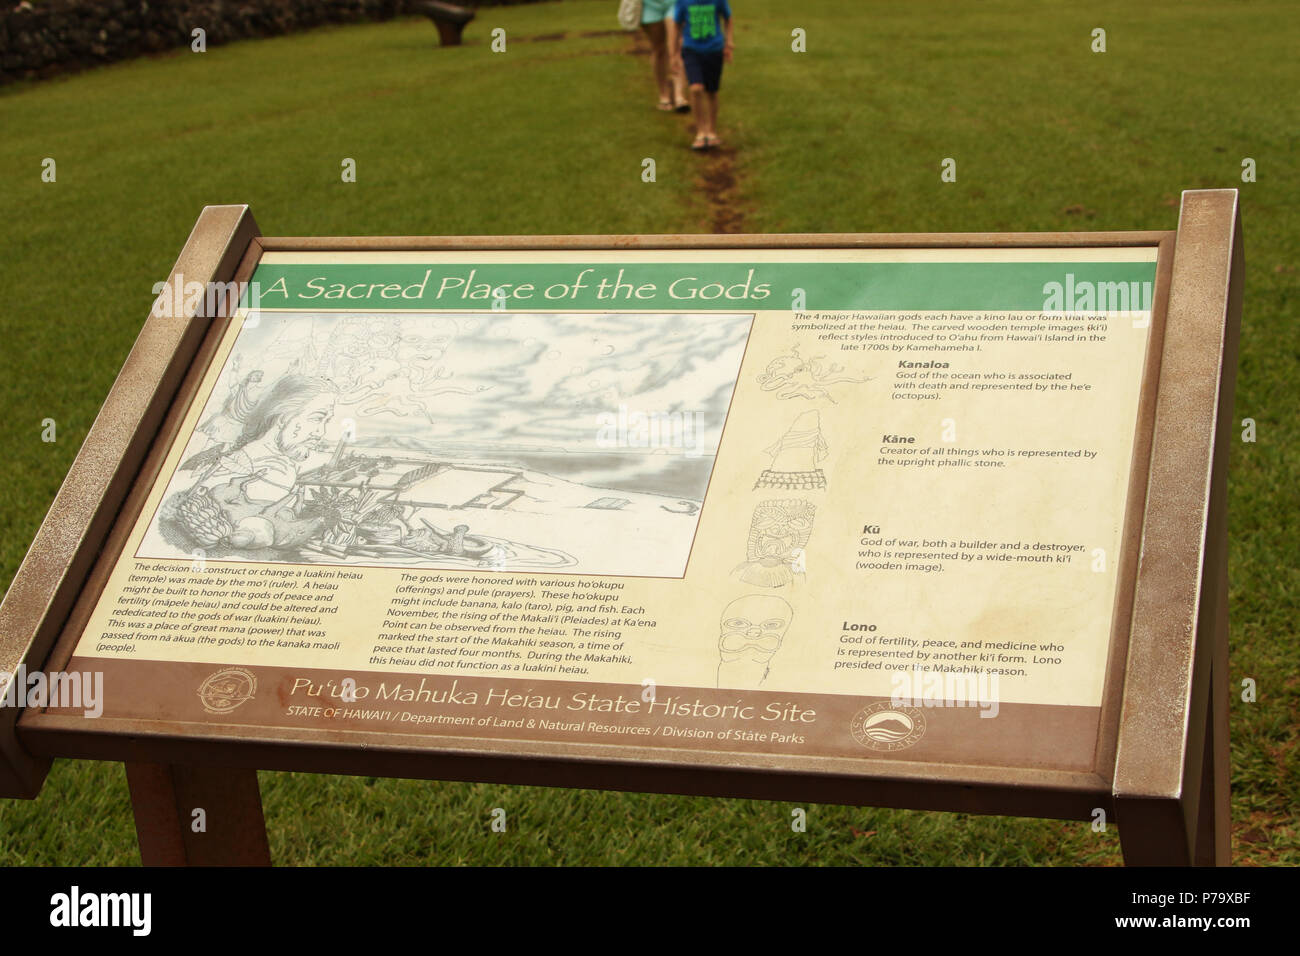 Inscrivez-vous à puu O Mahuka Heiau State Historic Site. Un lieu sacré des dieux. Une falaise donnant sur la baie de Waimea Waimea et vallée. L'île d'Oahu, Hawaii, USA Banque D'Images